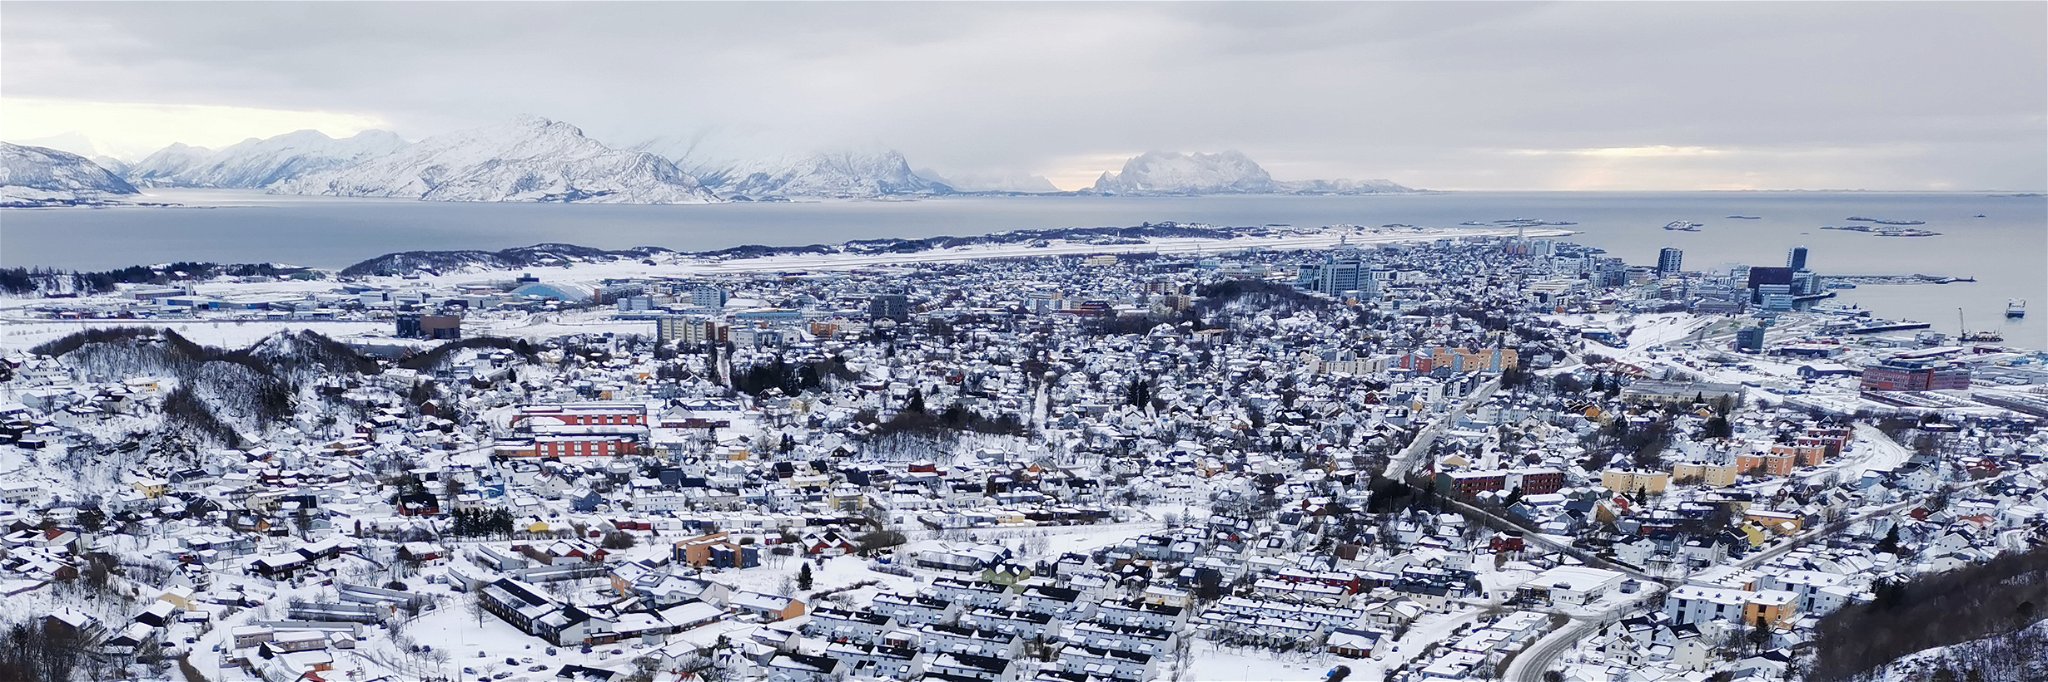 Bodø, Norway, in winter.